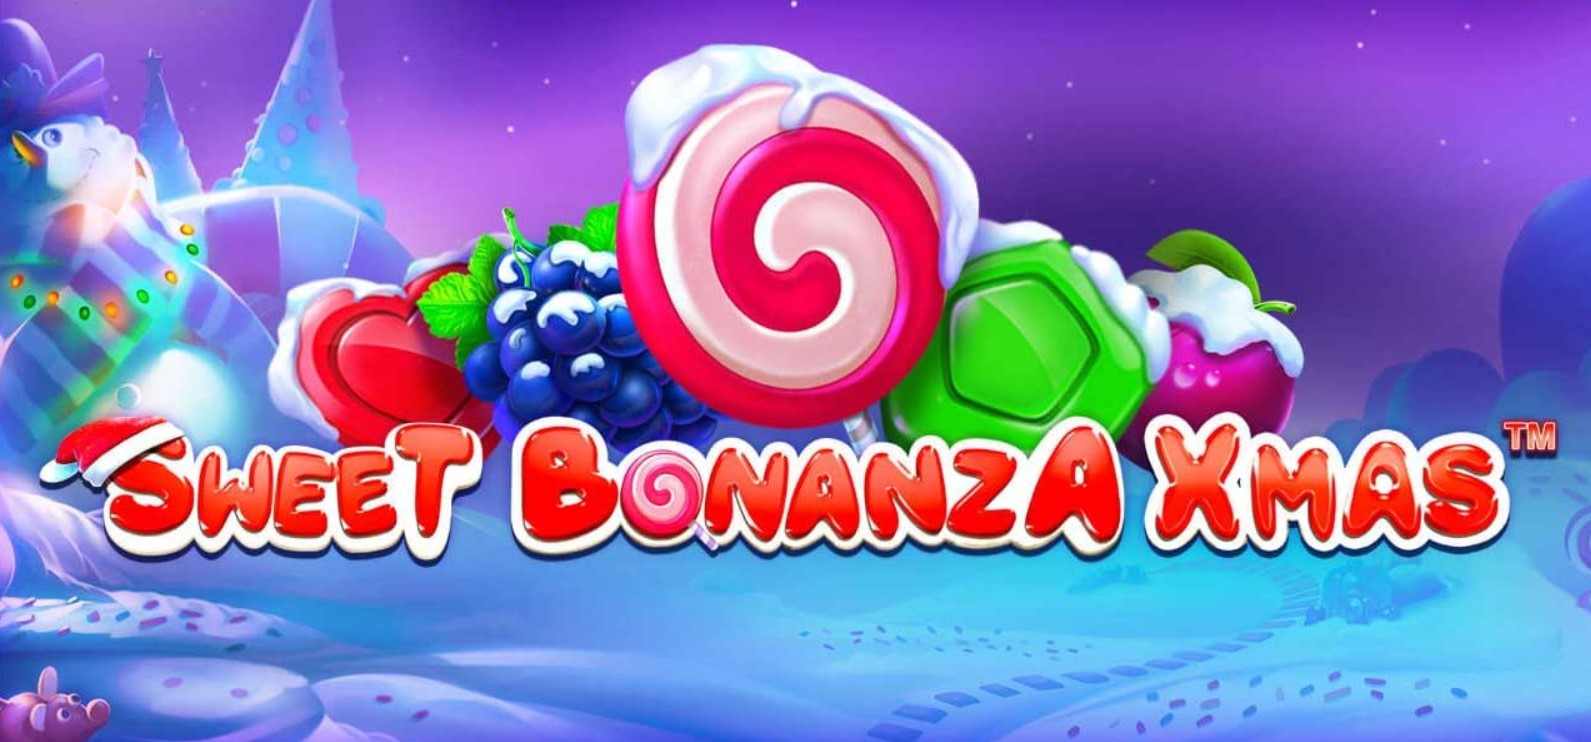 Sweet Bonanza Xmas ойынындағы жаңа жылдық сиқыр: ұяшыққа шолу